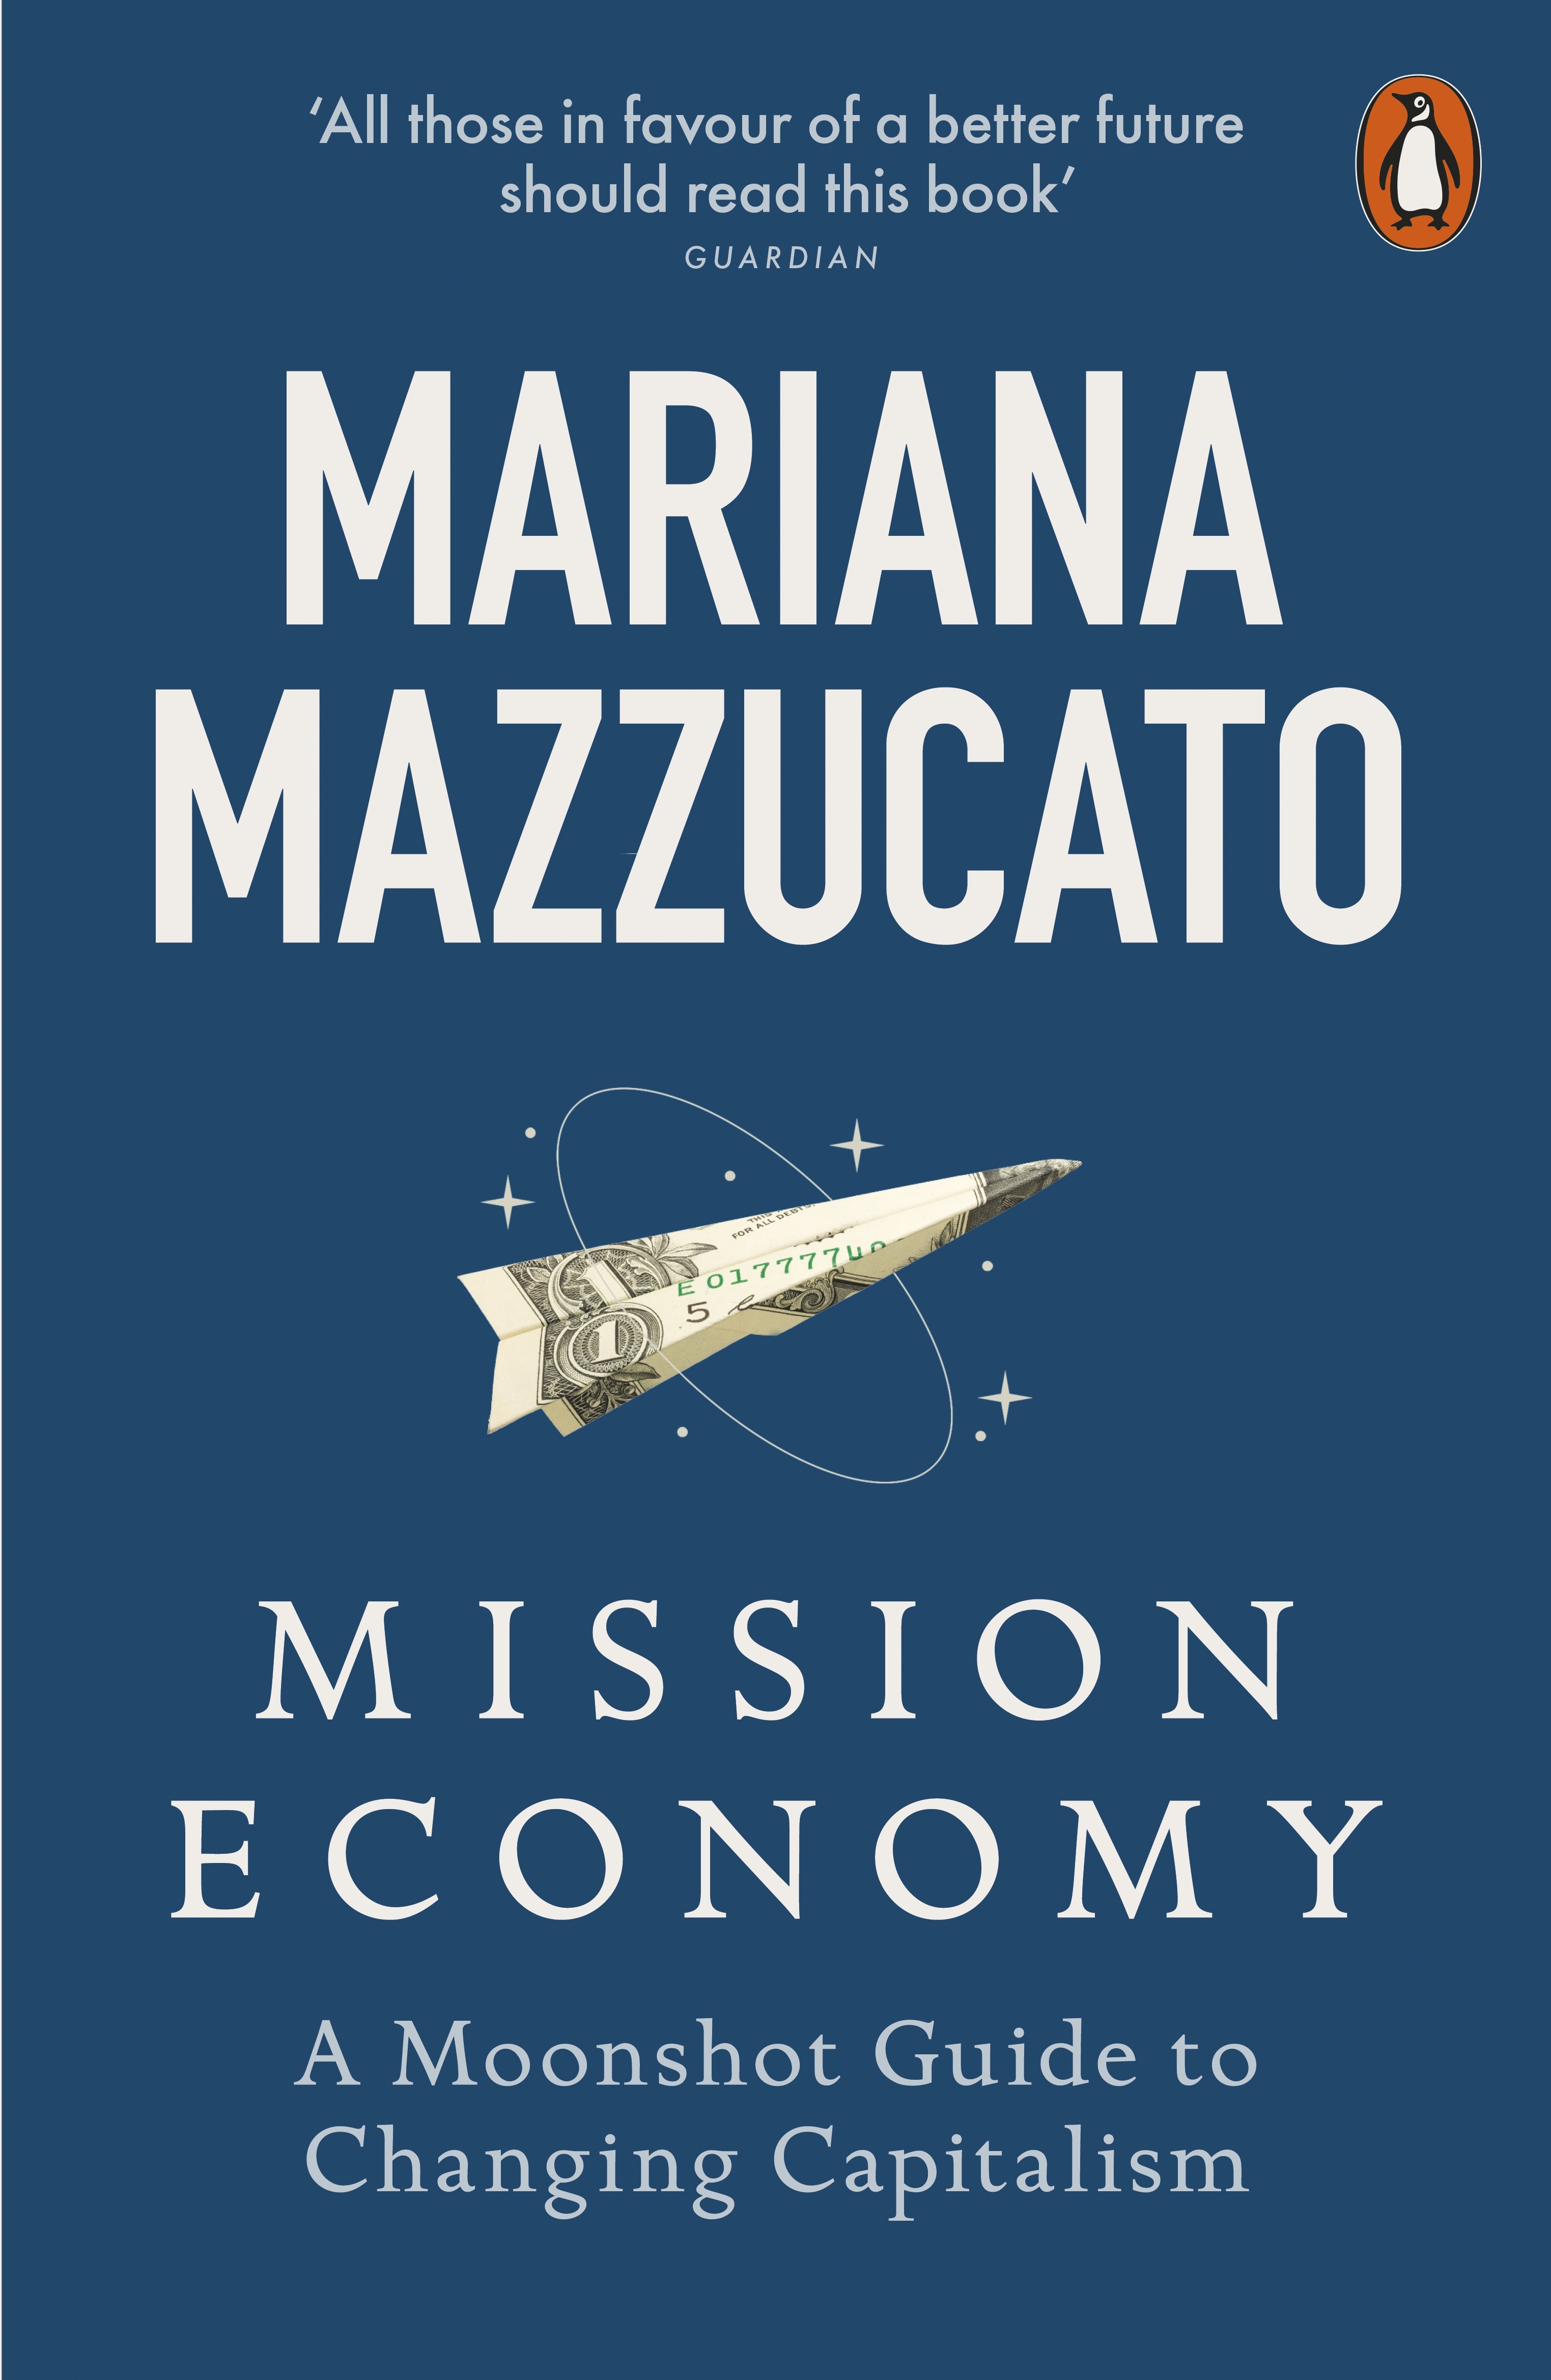 Book “Mission Economy” by Mariana Mazzucato — January 27, 2022